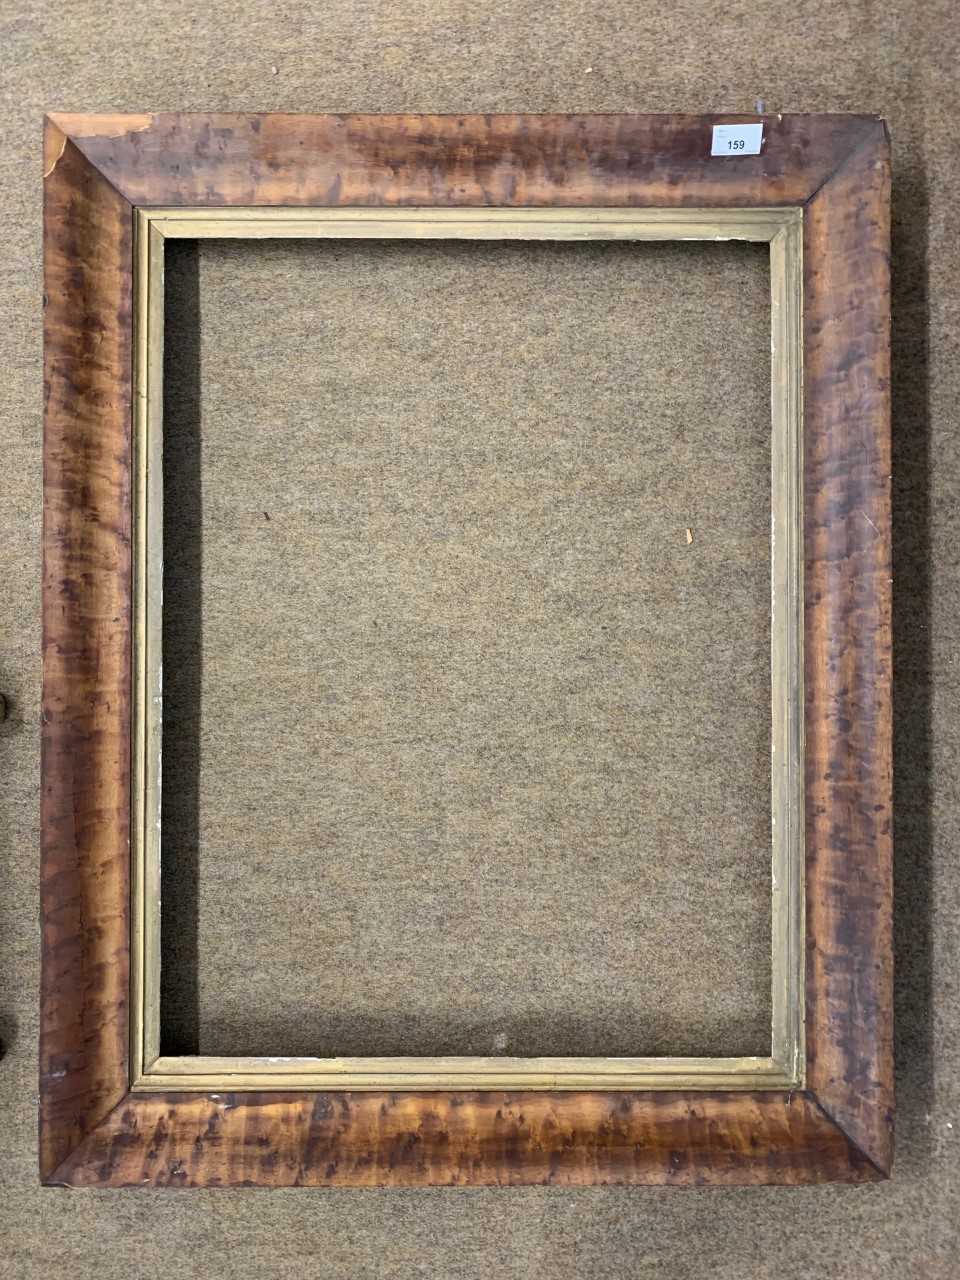 Lot 159 - Veneer frame, 33x26ins